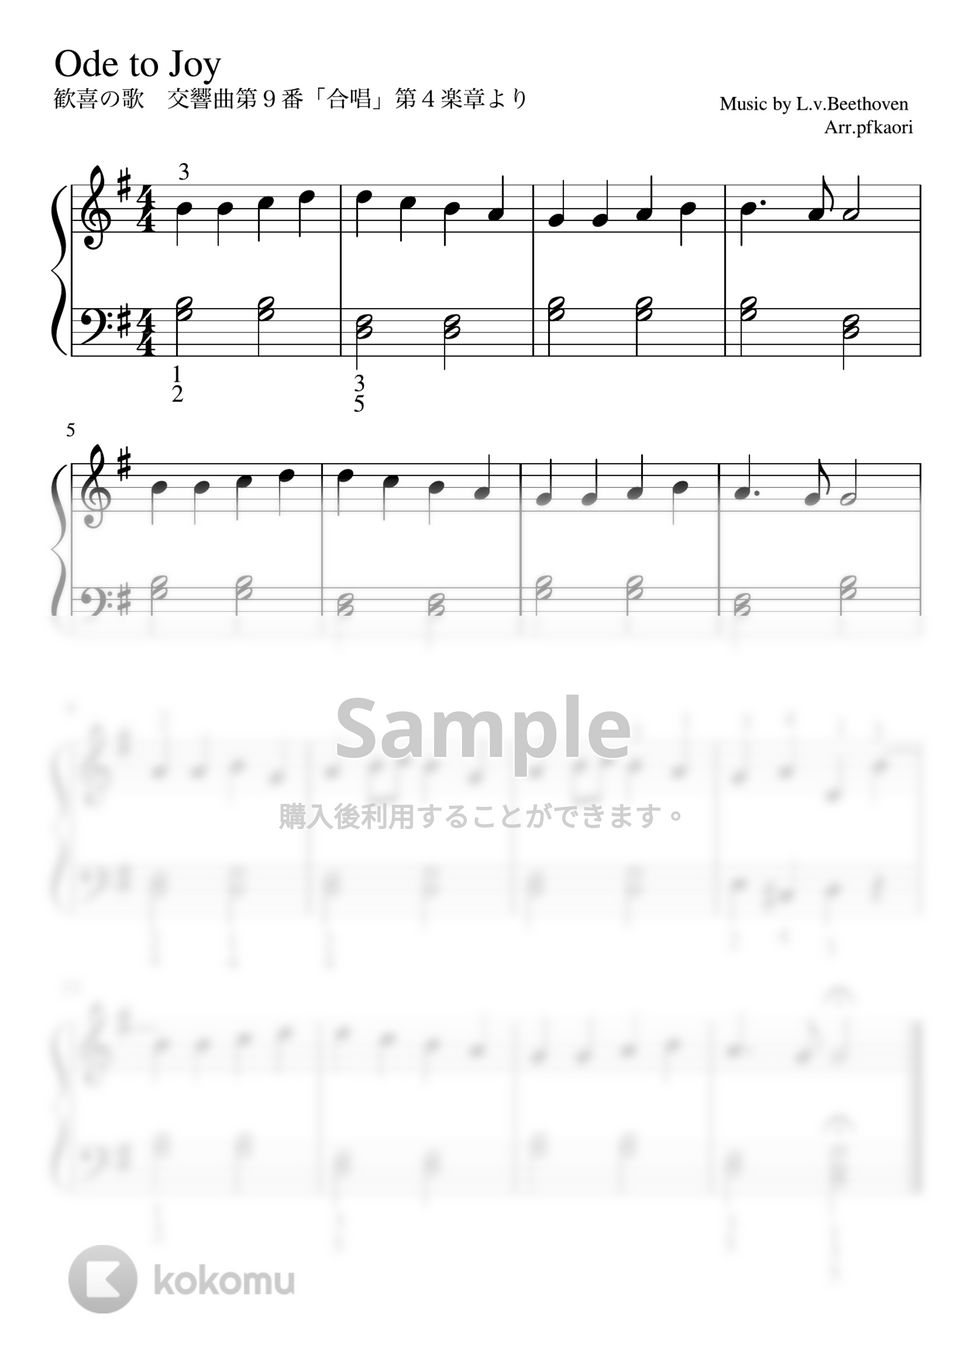 ベートーヴェン - 歓喜の歌 (Gdur・ピアノソロ初級) by pfkaori